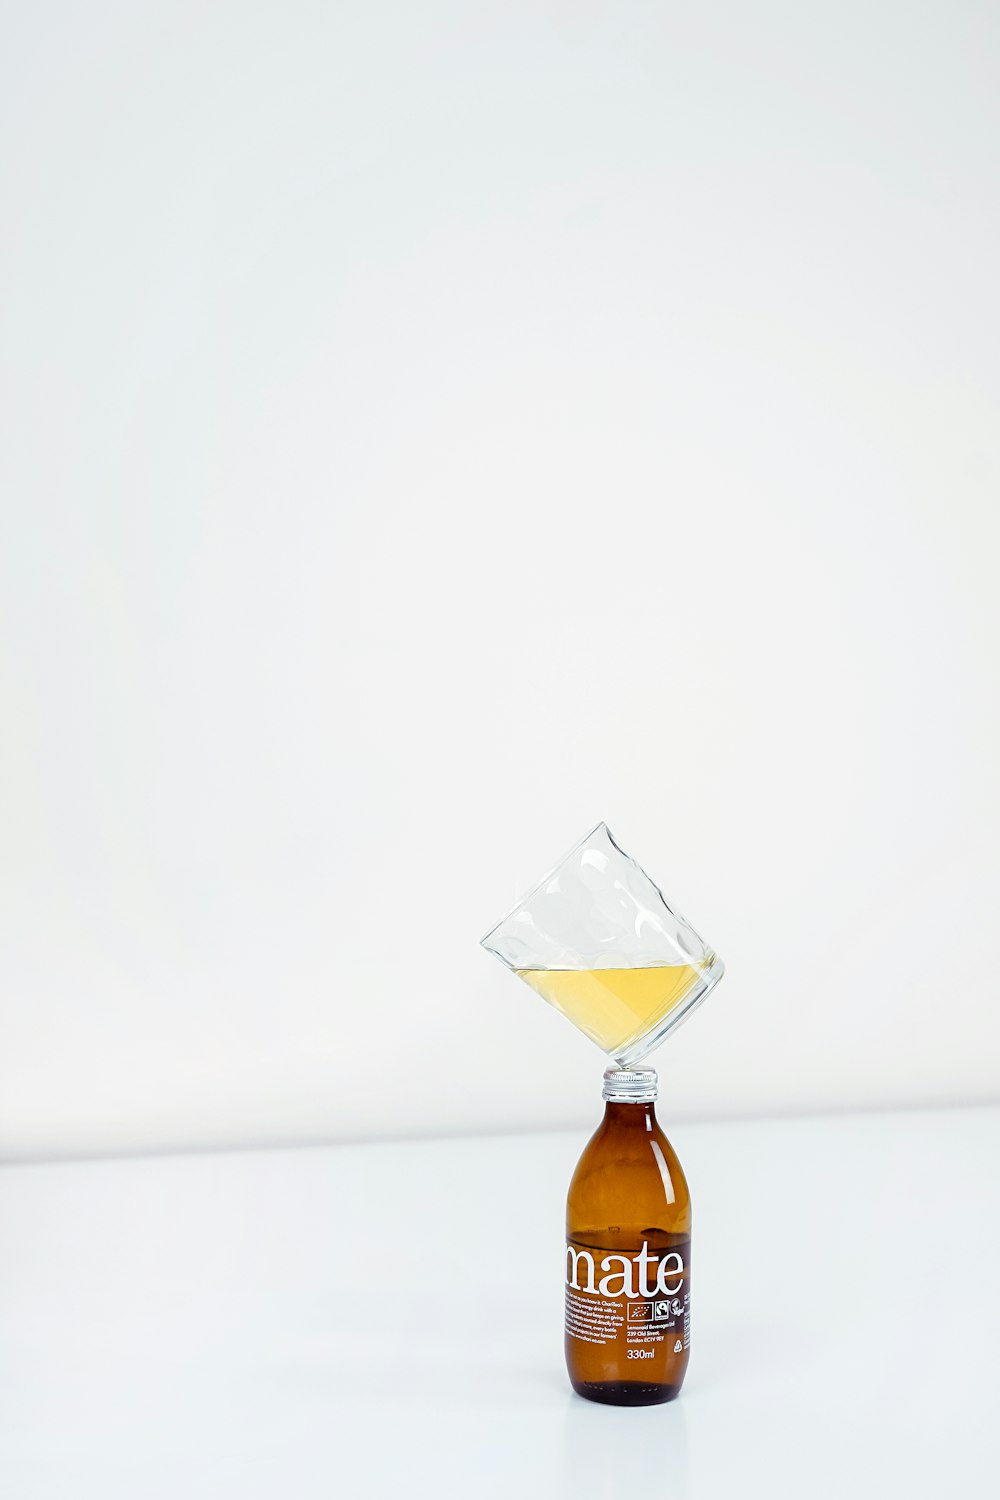 1/4 volles, klares Trinkglas auf der braunen Flasche